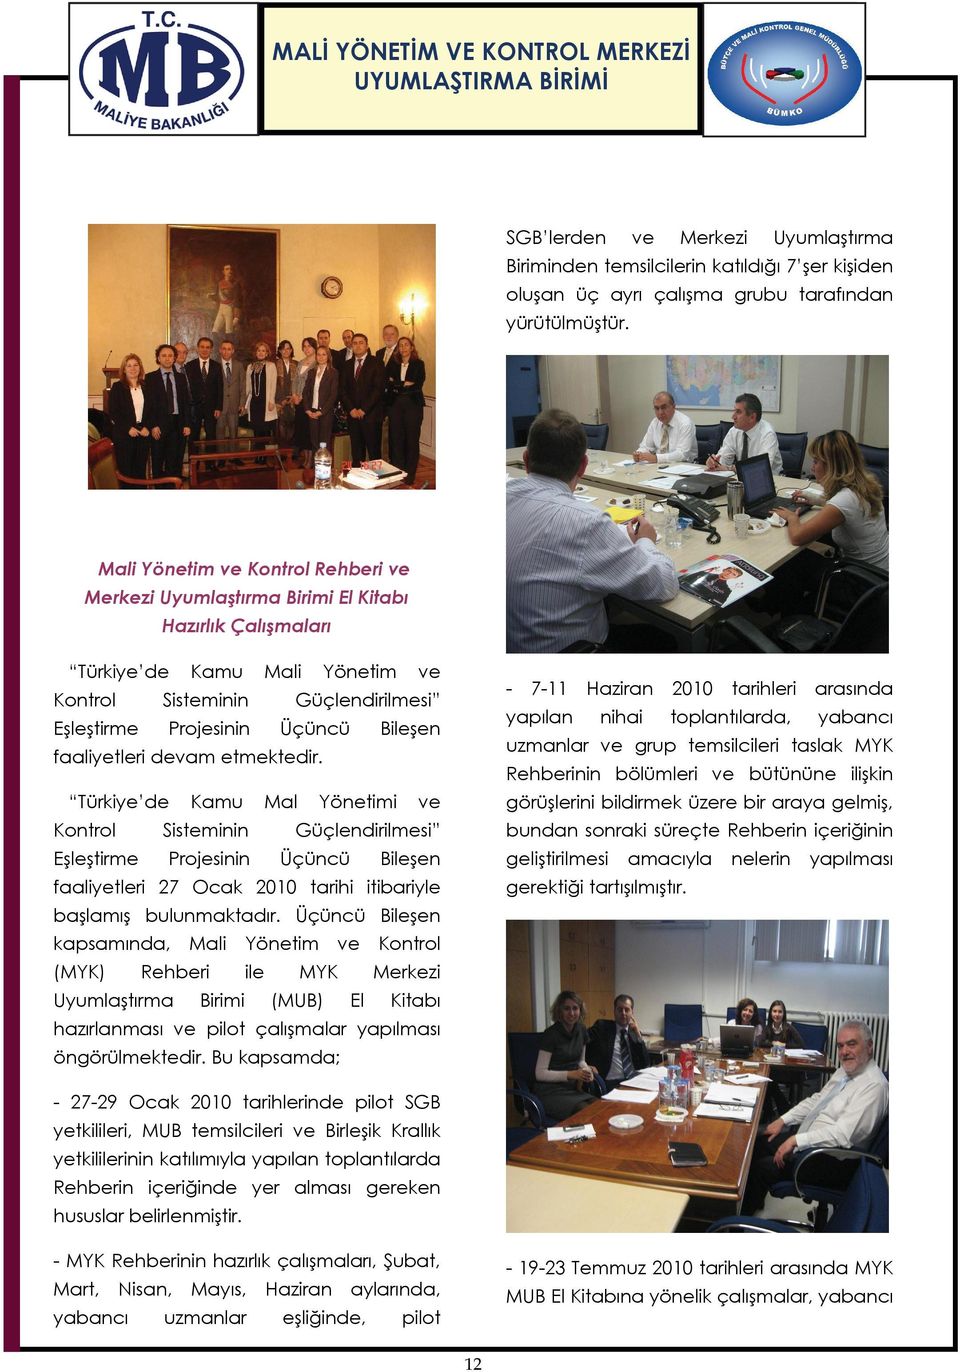 Bileşen Türkiye de Eşleştirme Kamu Mal Sisteminin Projesinin nihai 2010 tarihleri arasında toplantılarda, yabancı uzmanlar ve grup temsilcileri taslak MYK faaliyetleri devam etmektedir.